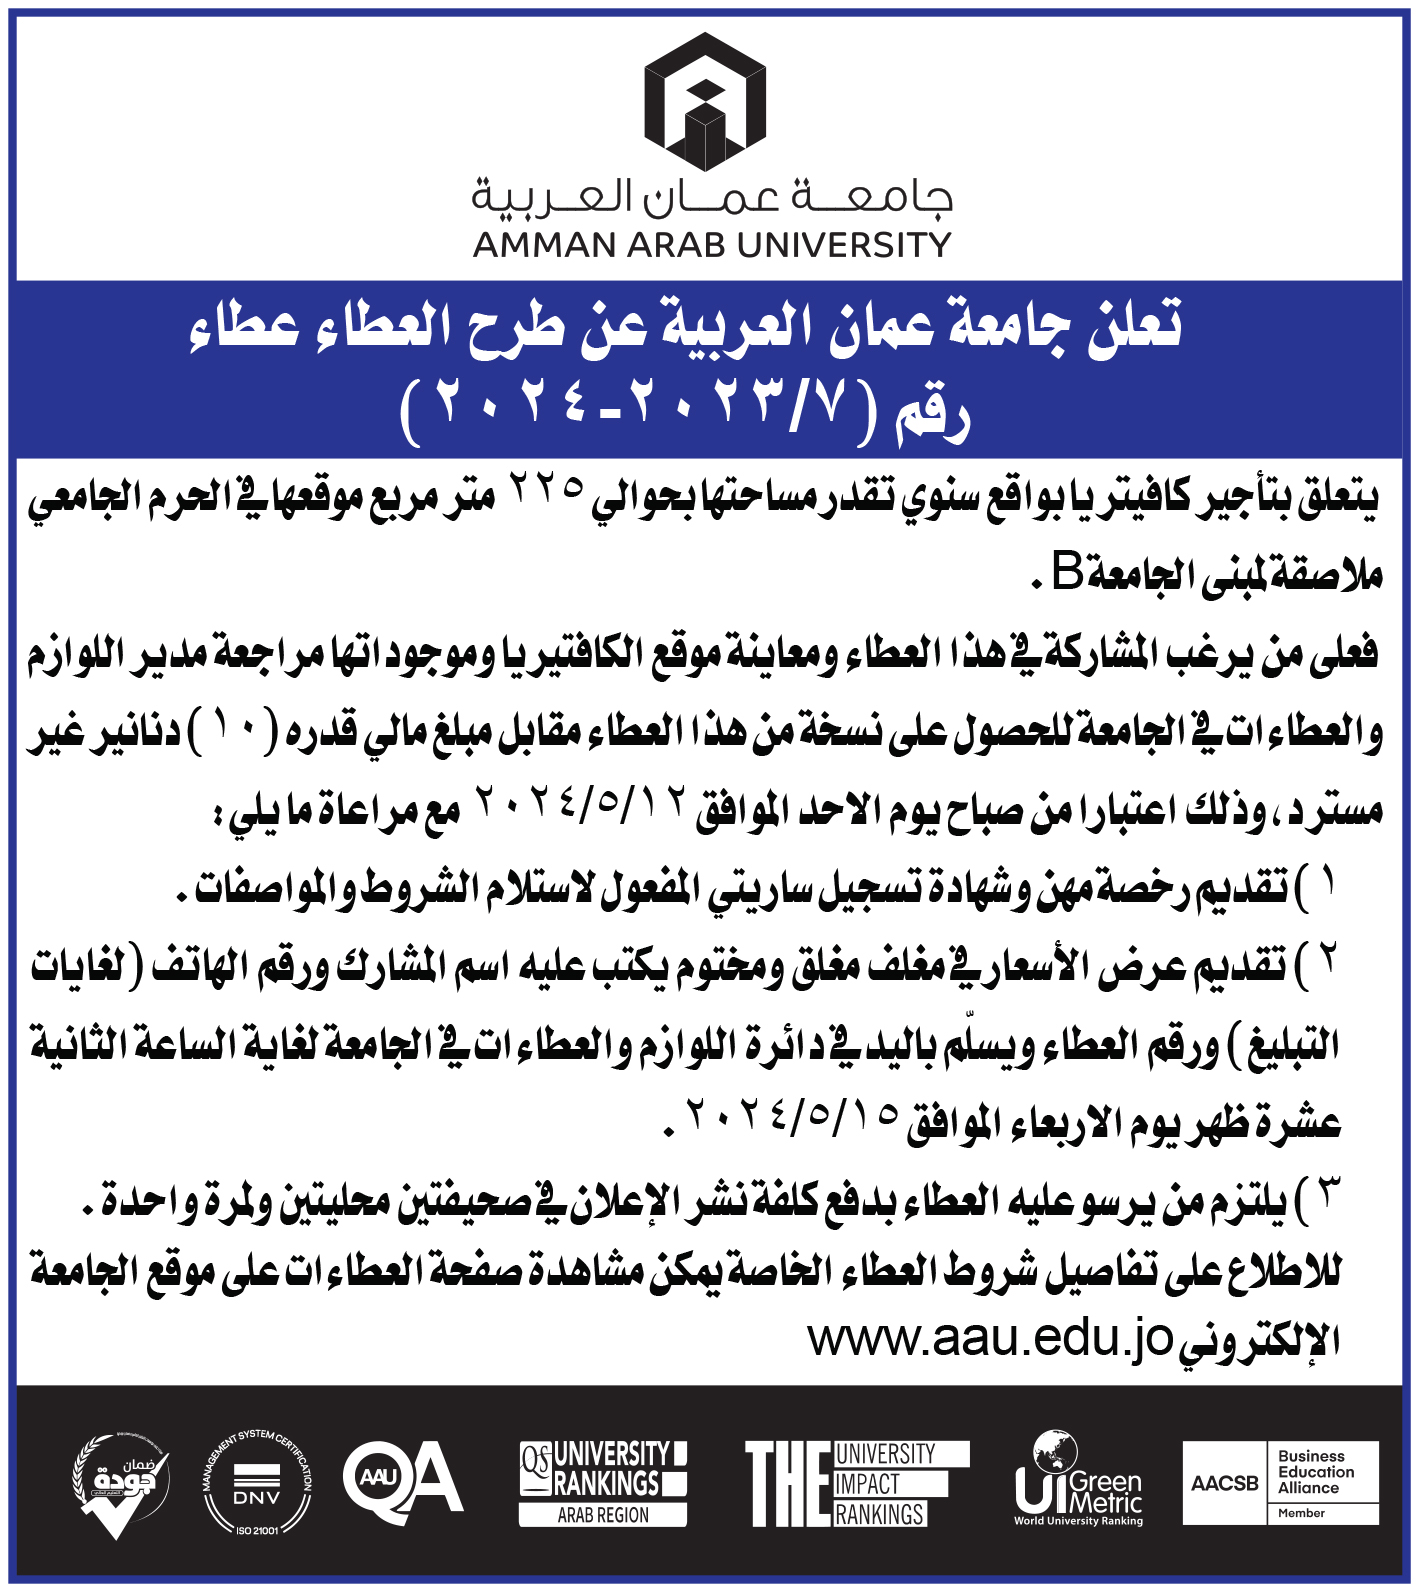 اعلان عطاء تأجير كافيتريا داخل حرم جامعة عمان العربية